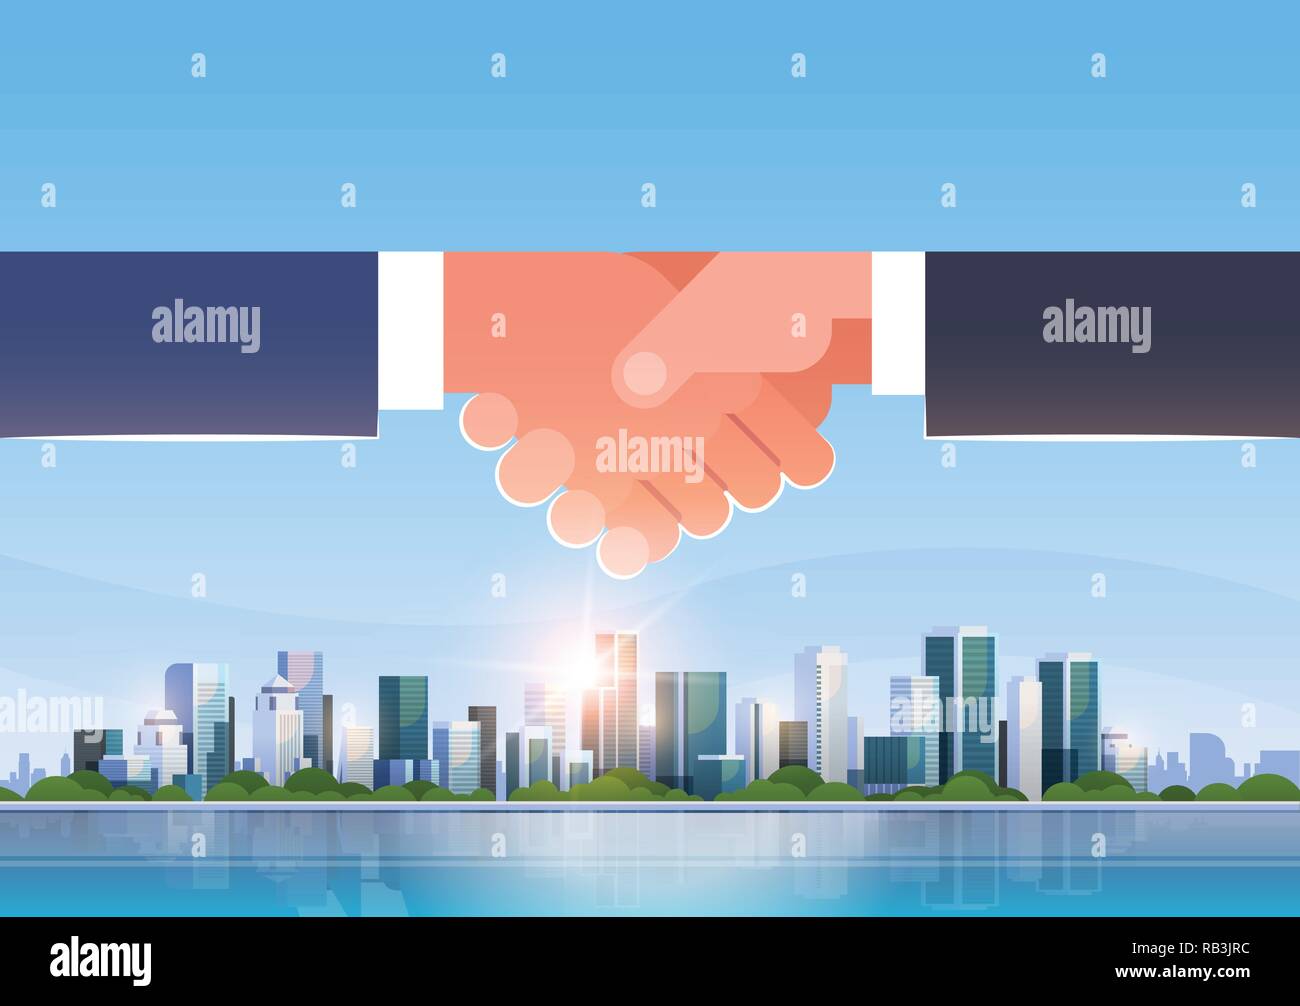 Die Hand schütteln Symbol Business handshake Partnerschaftsabkommen Konzept erfolgreiche Zusammenarbeit in grossen modernen Stadt Wolkenkratzer Skyline skyline Waagrechten Stock Vektor